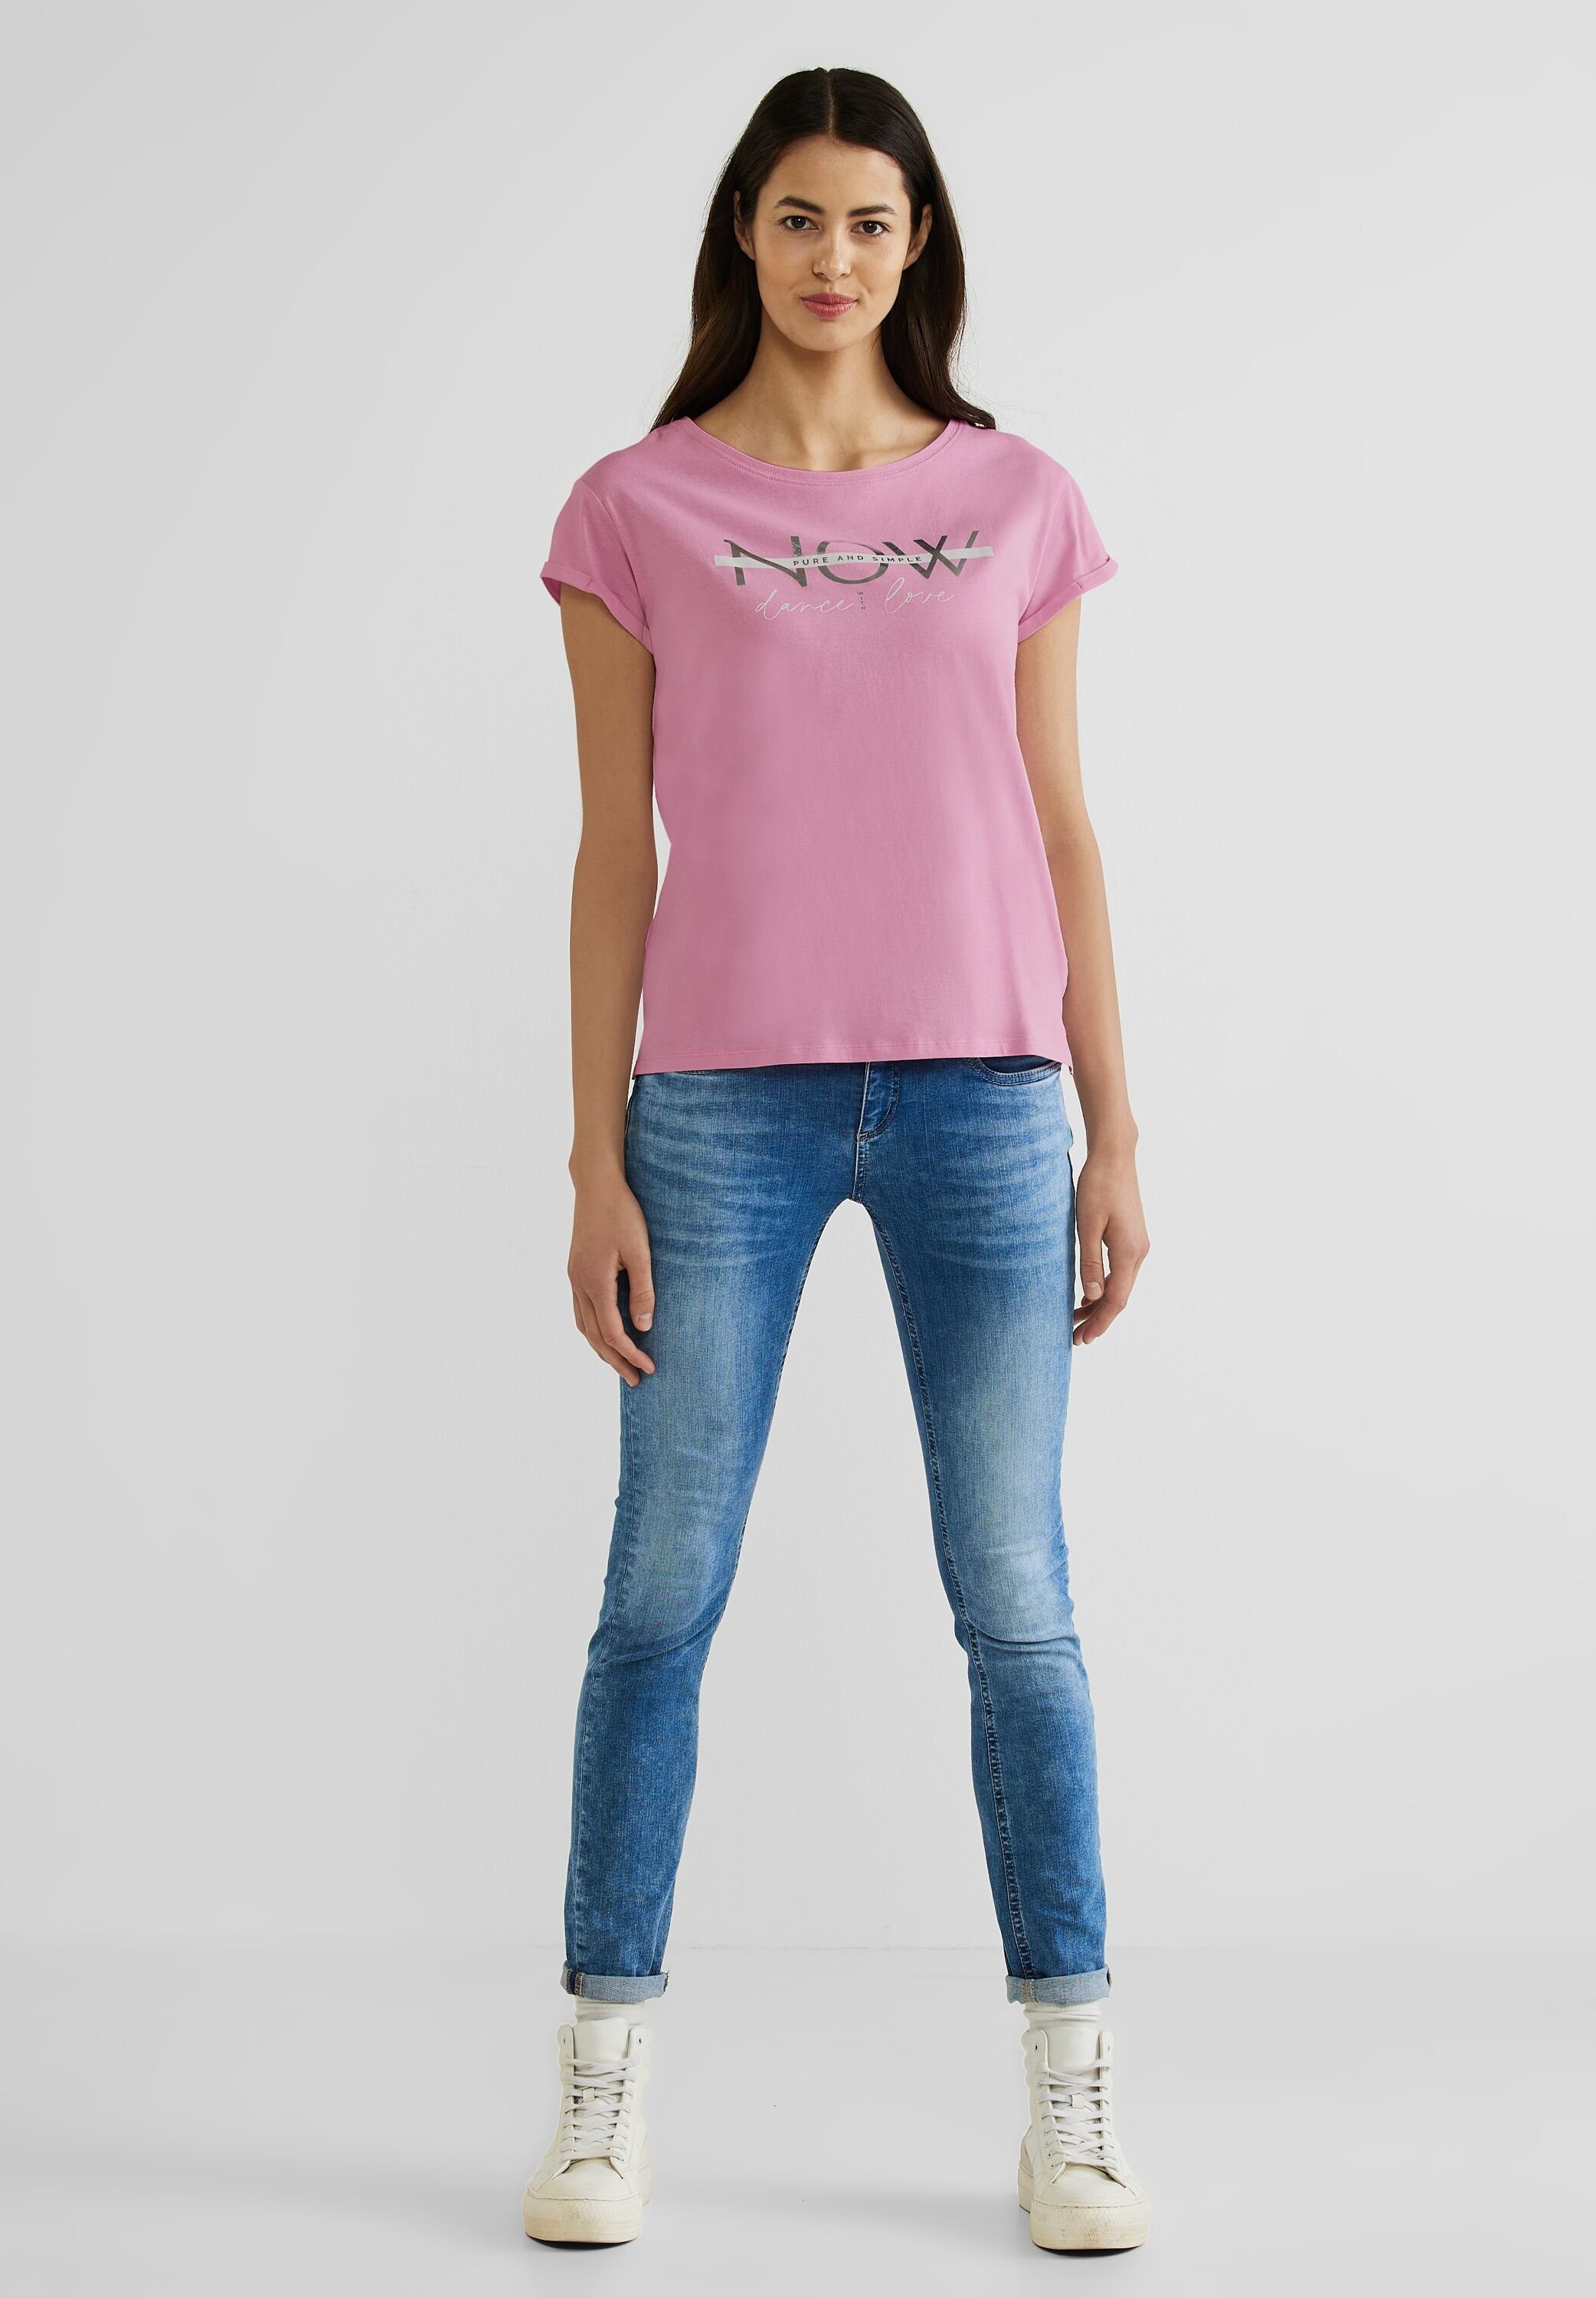 ONE reiner Baumwolle T-Shirt STREET wild aus rose